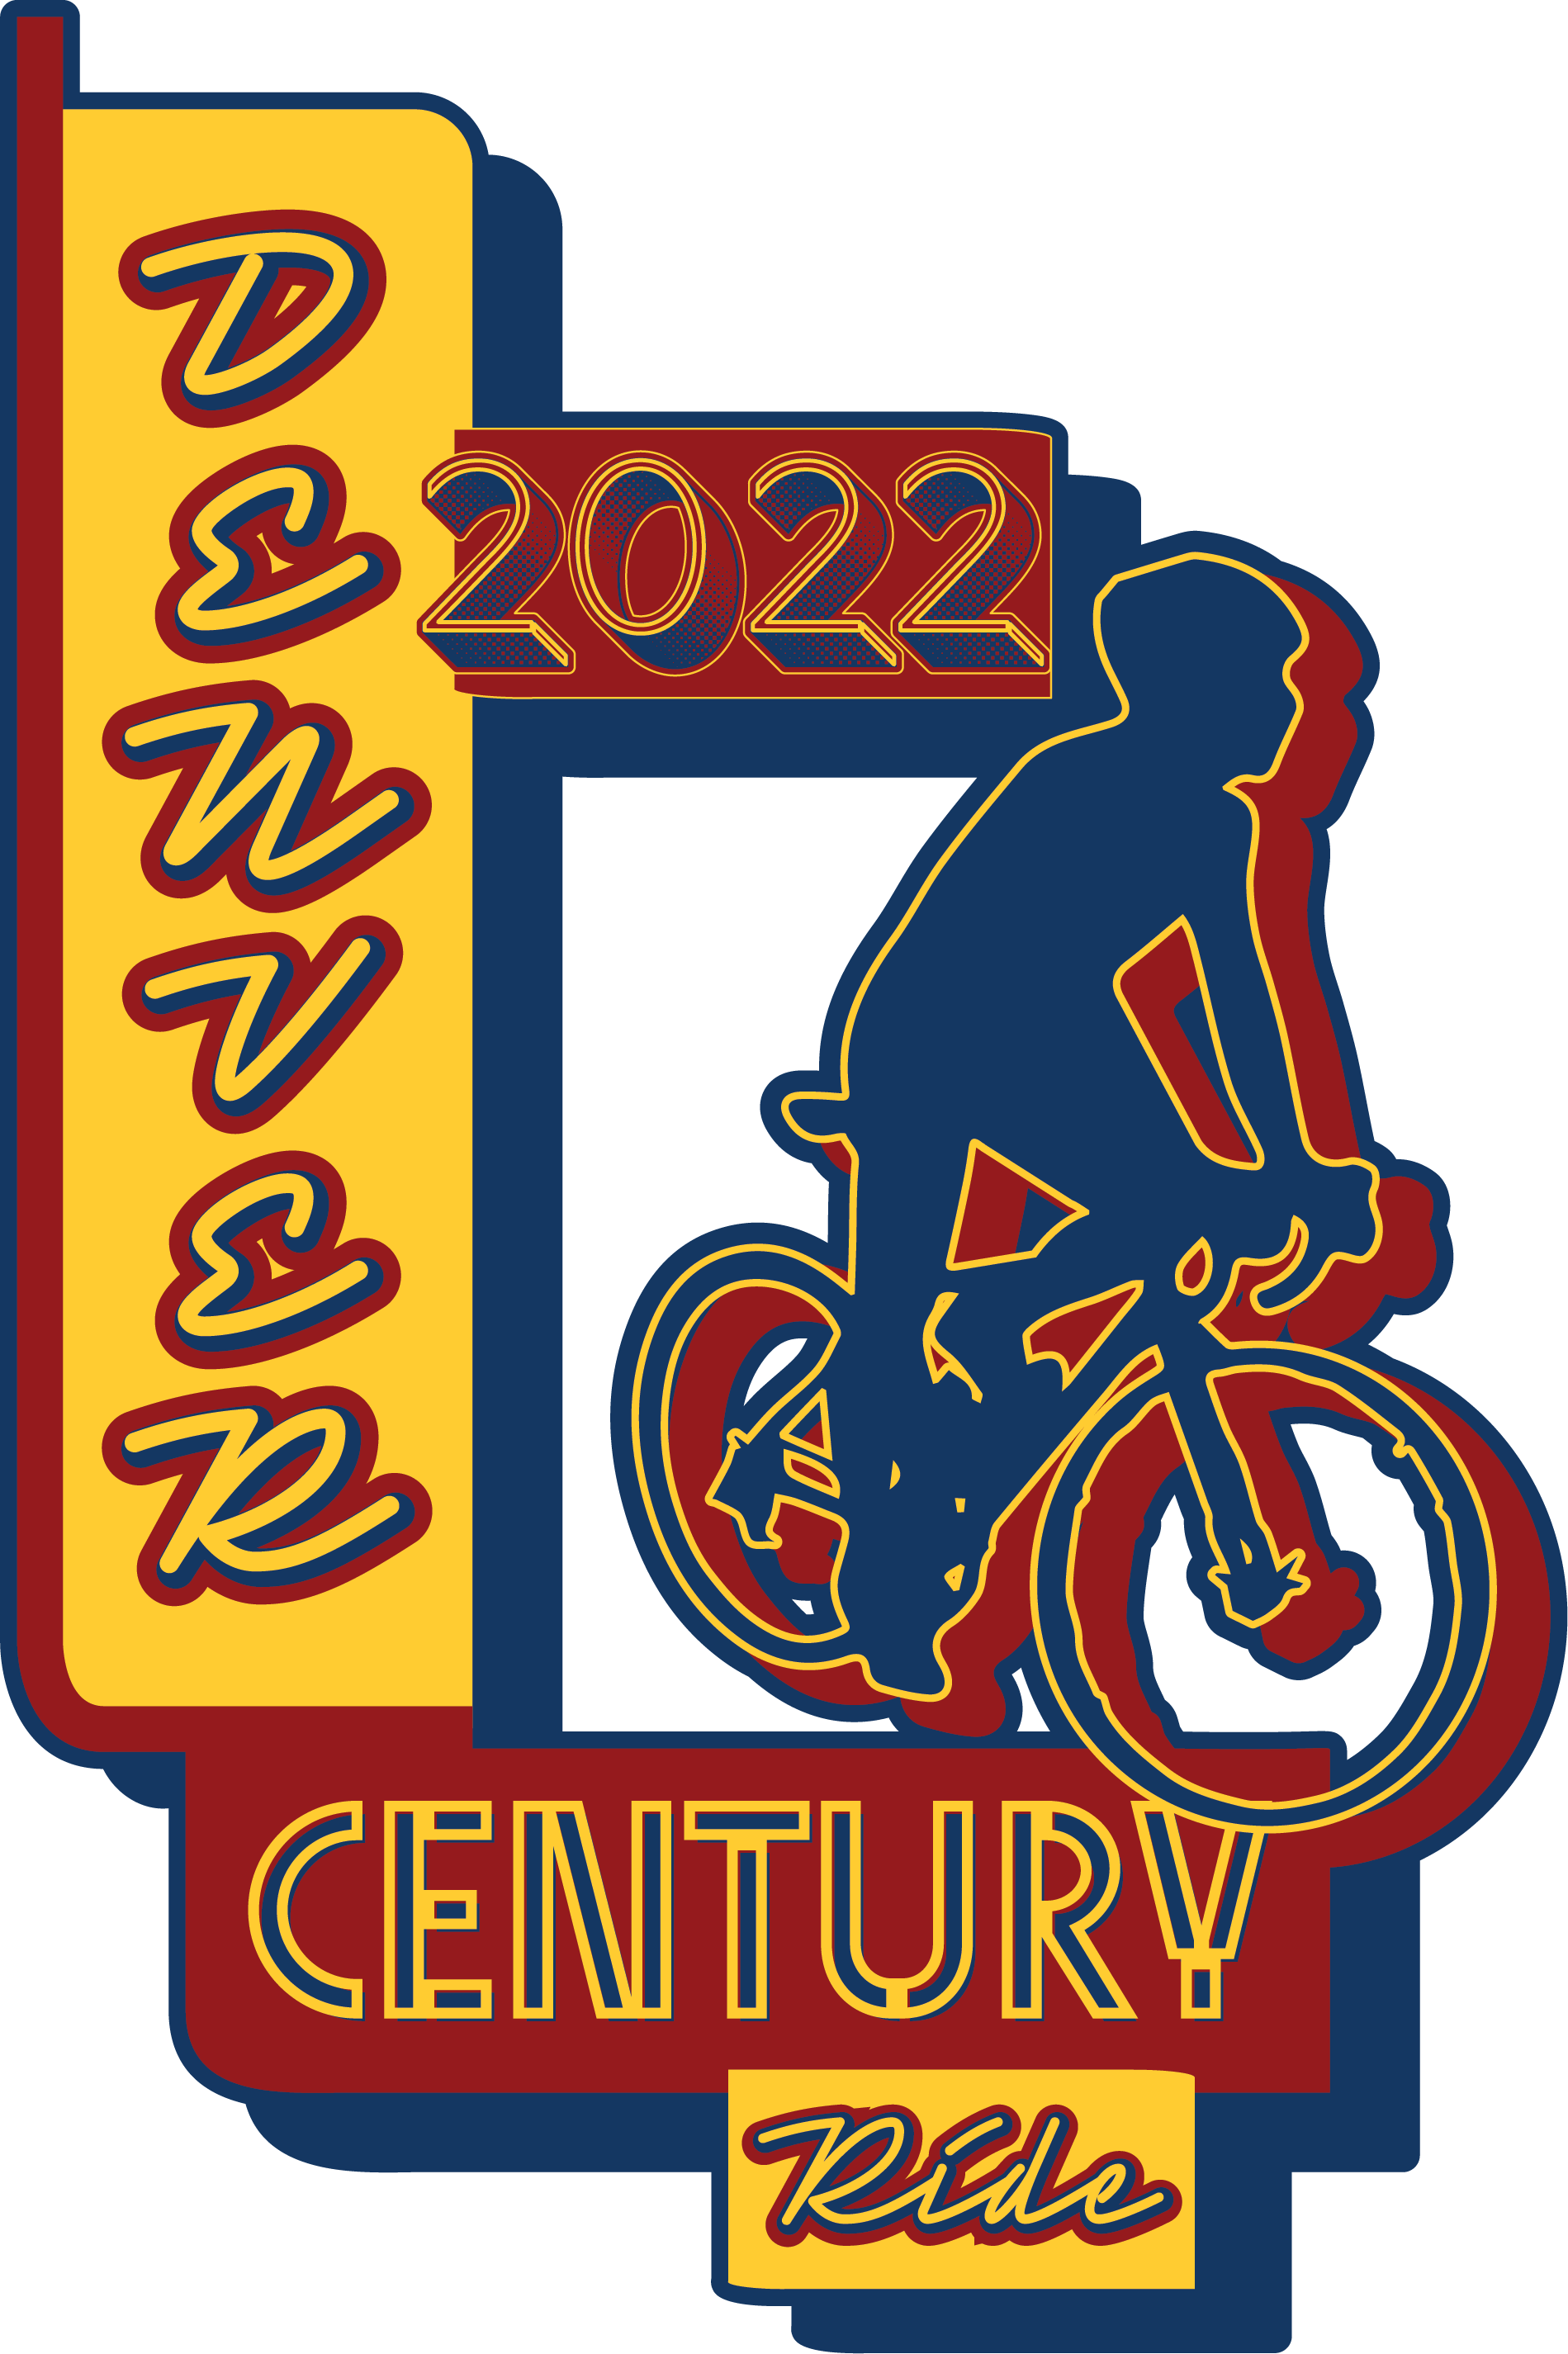 The 2022 Denver Century Ride logo.